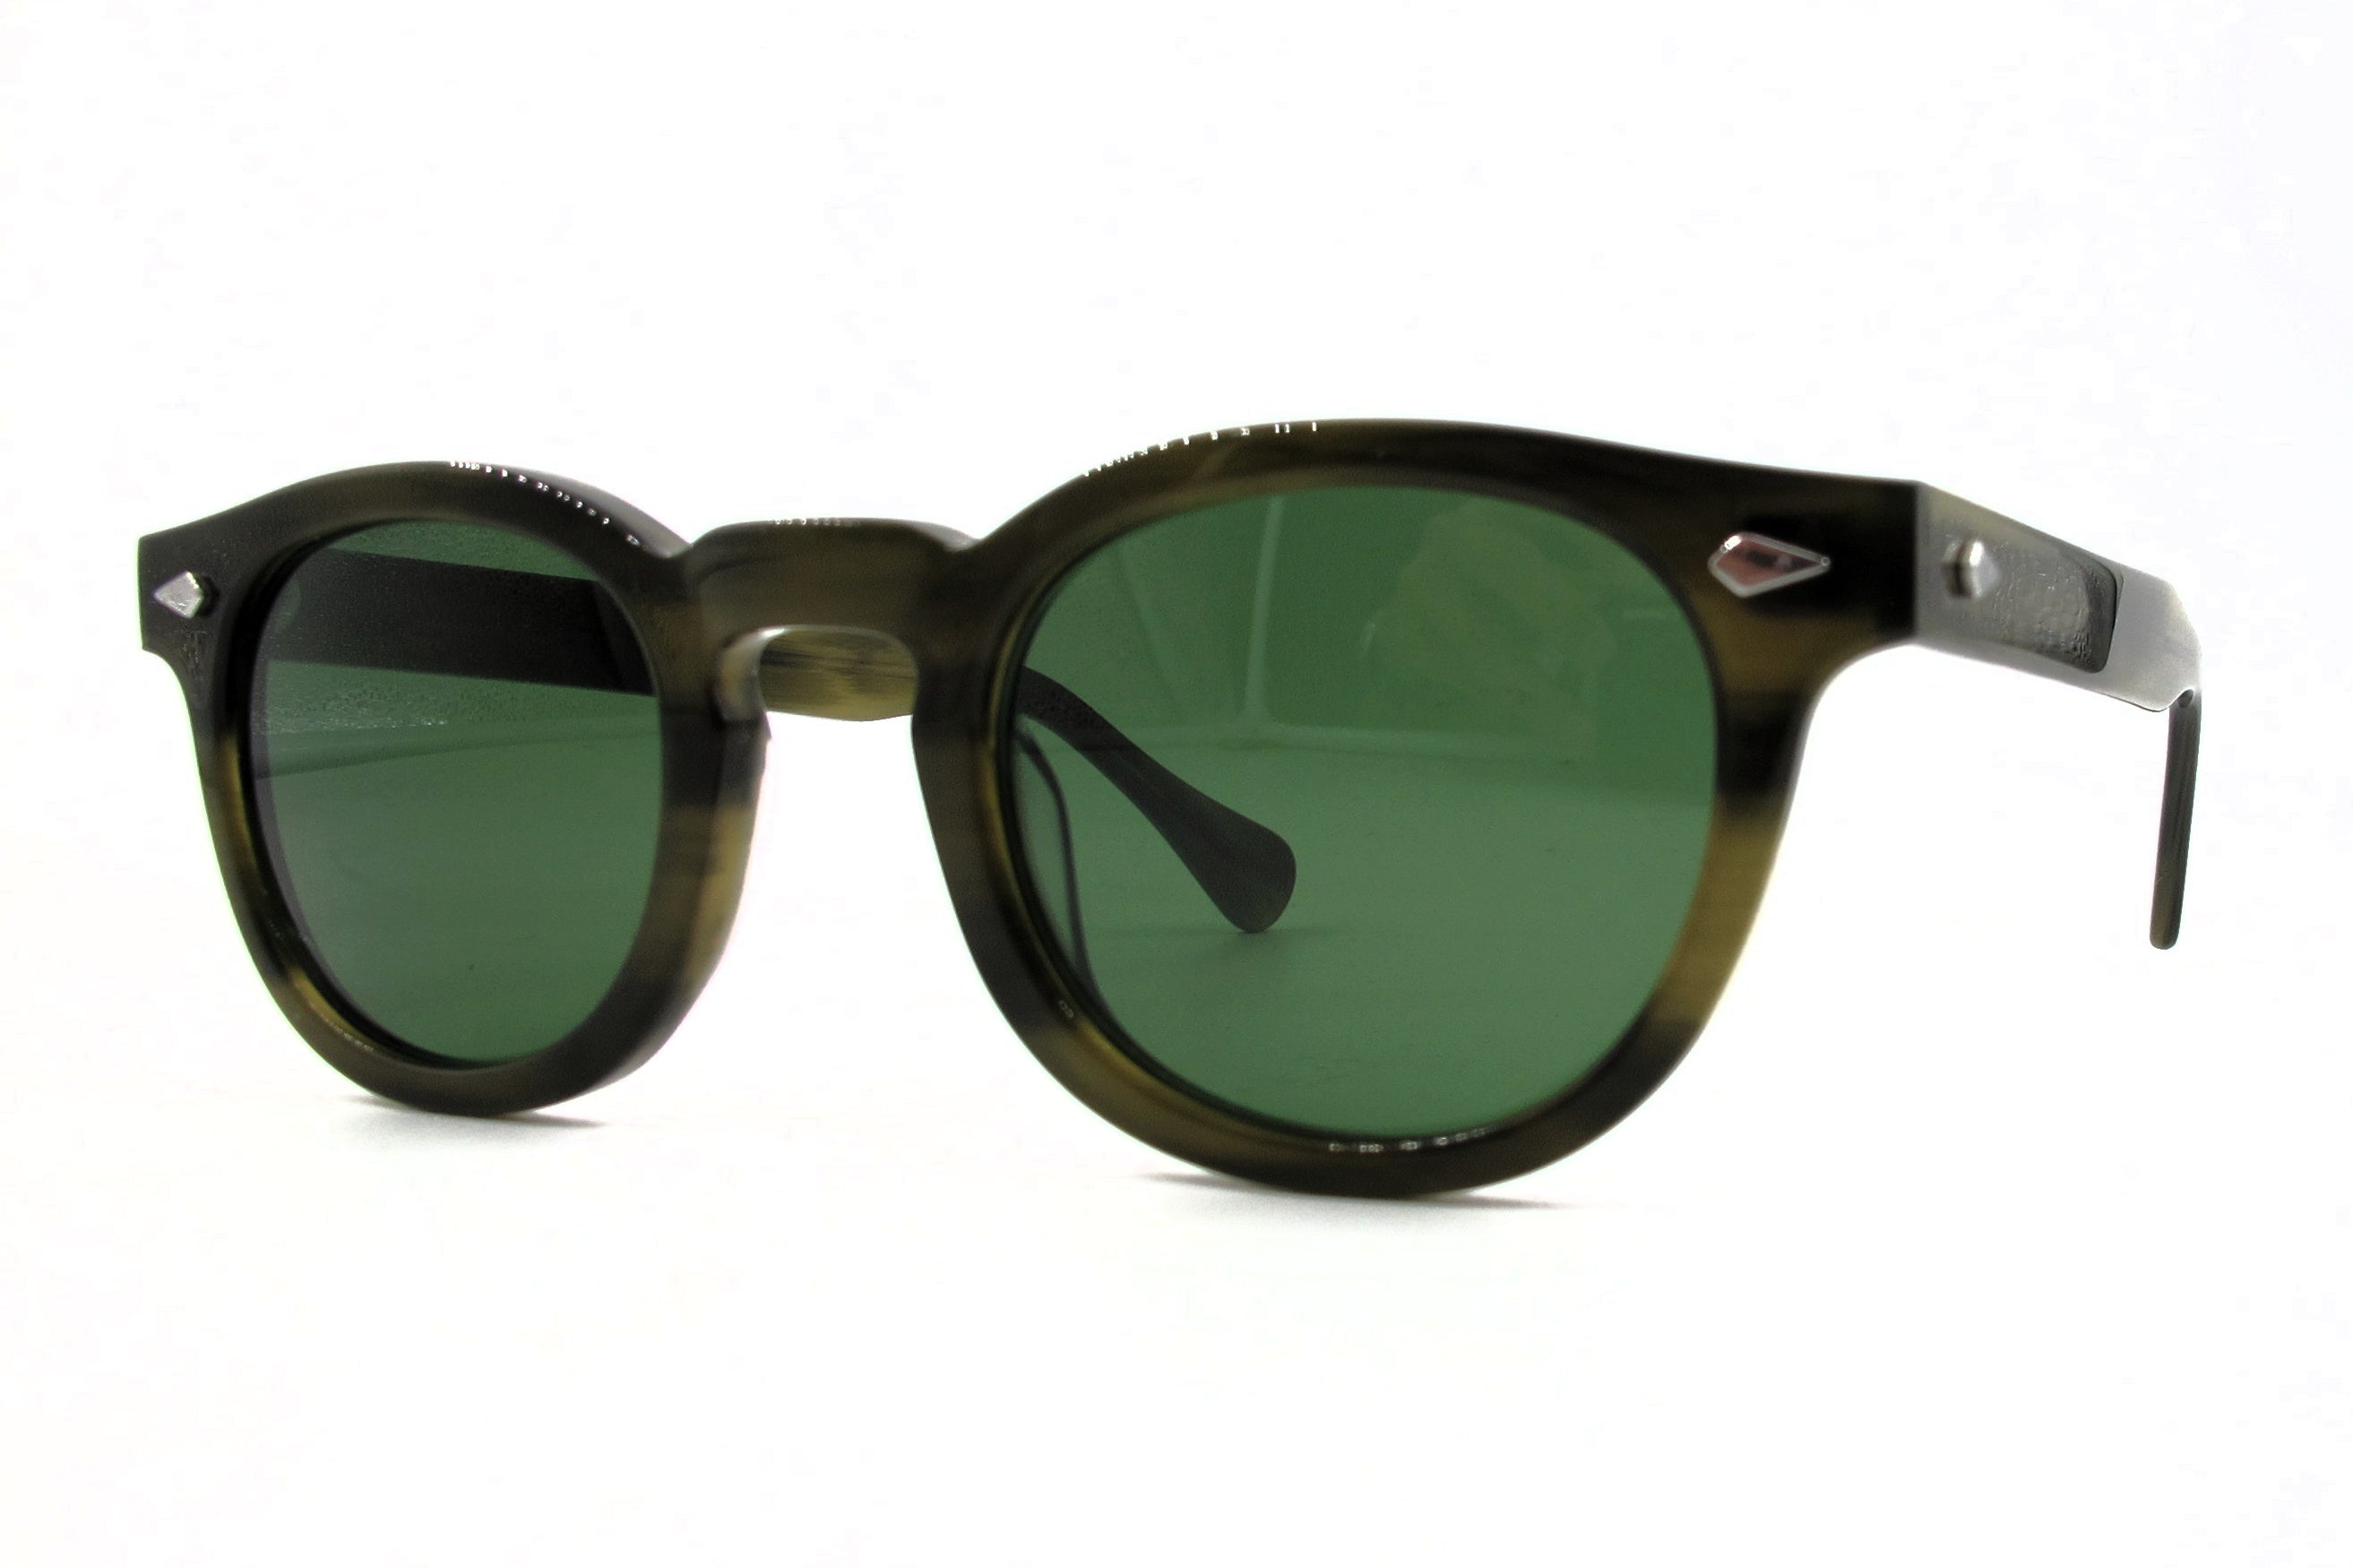 ASE Ginsberg 050-21 Sunglasses - Green Tortoise